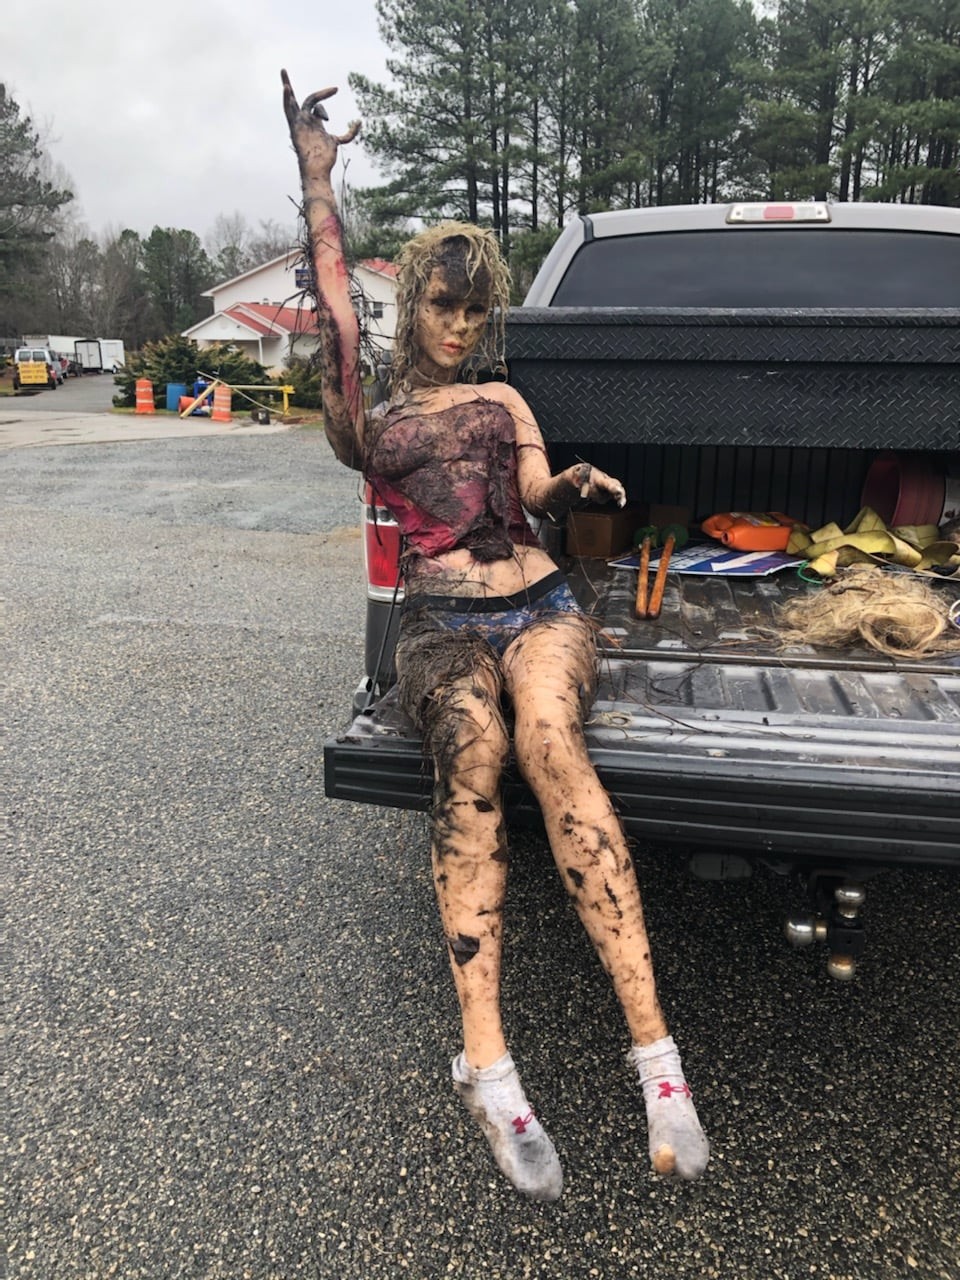 Polícia recebe denúncia sobre corpo em trilha, mas era boneca em tamanho real (Foto: reprodução/Facebook Jones County Sheriff's Office)